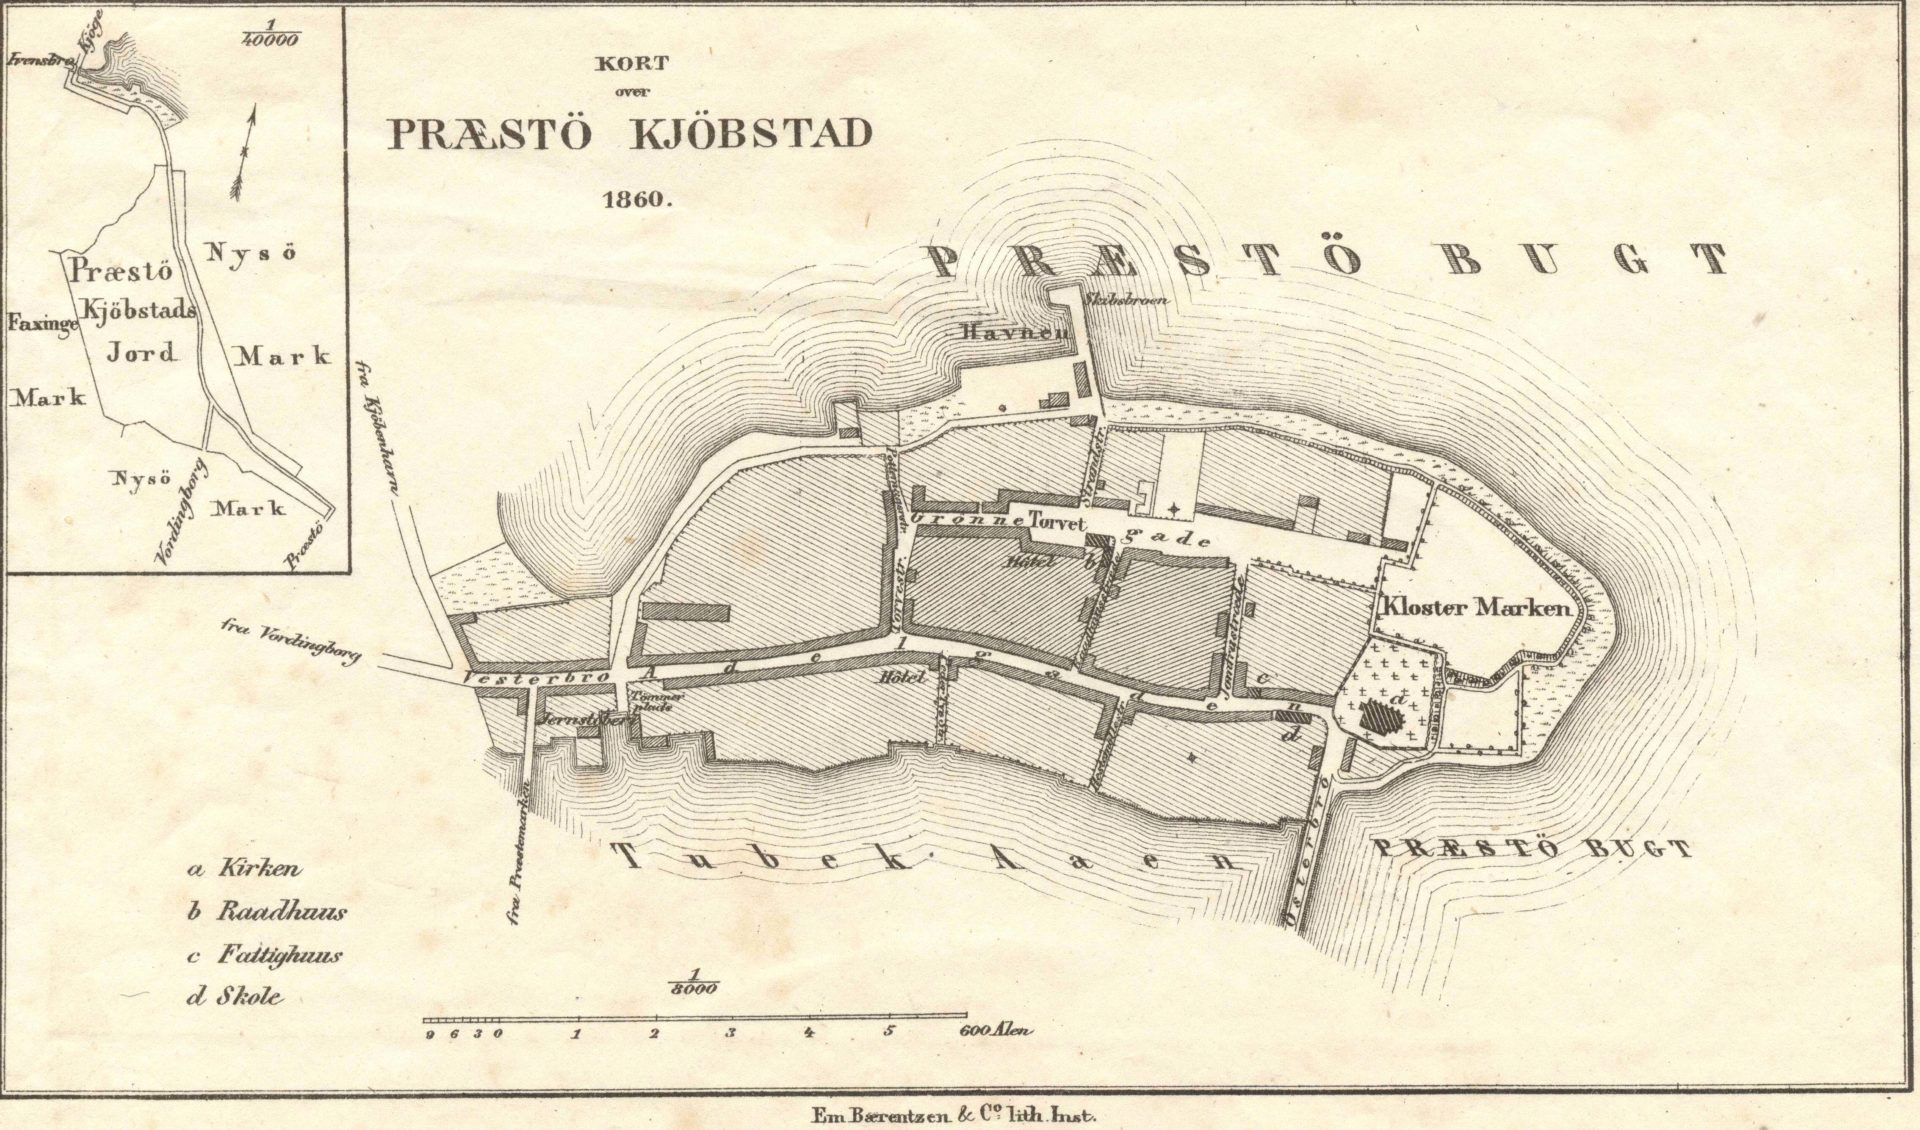 Kobberstik eller tegning: Kort over Præstø 1860